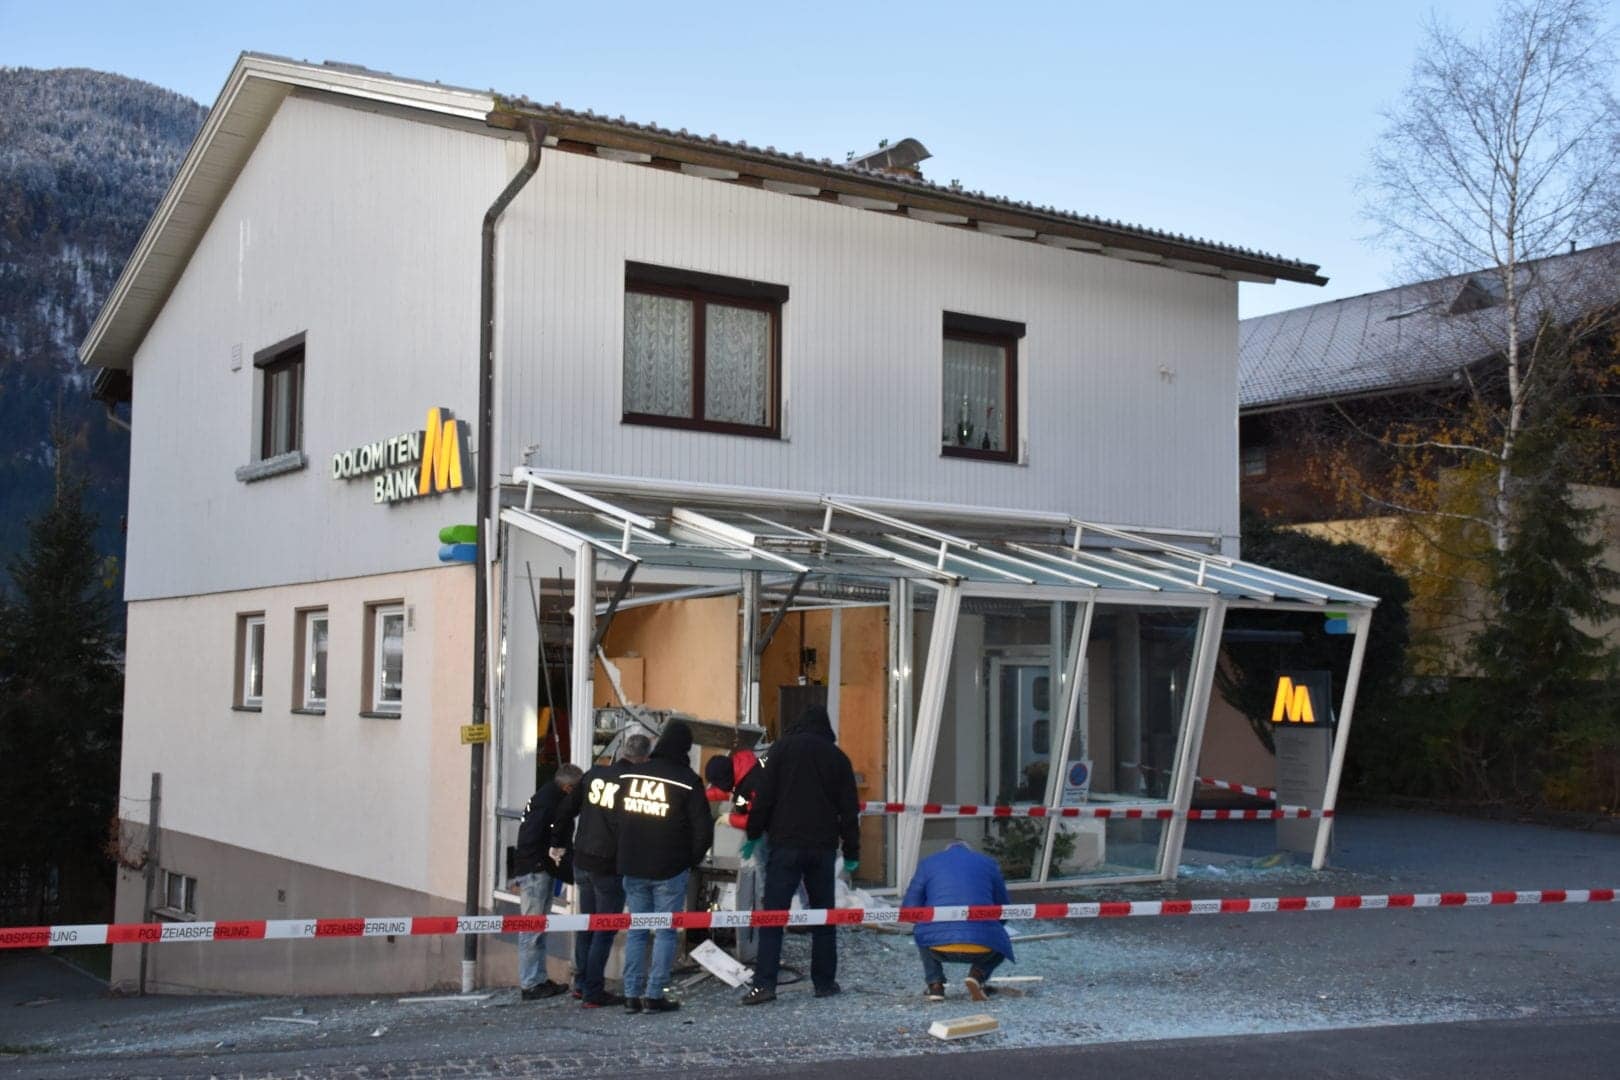 Bei dieser Bank wurde ein Bankomat im November 2019 gesprengt. Mehr als 55.000 Euro wurden daraus gestohlen.